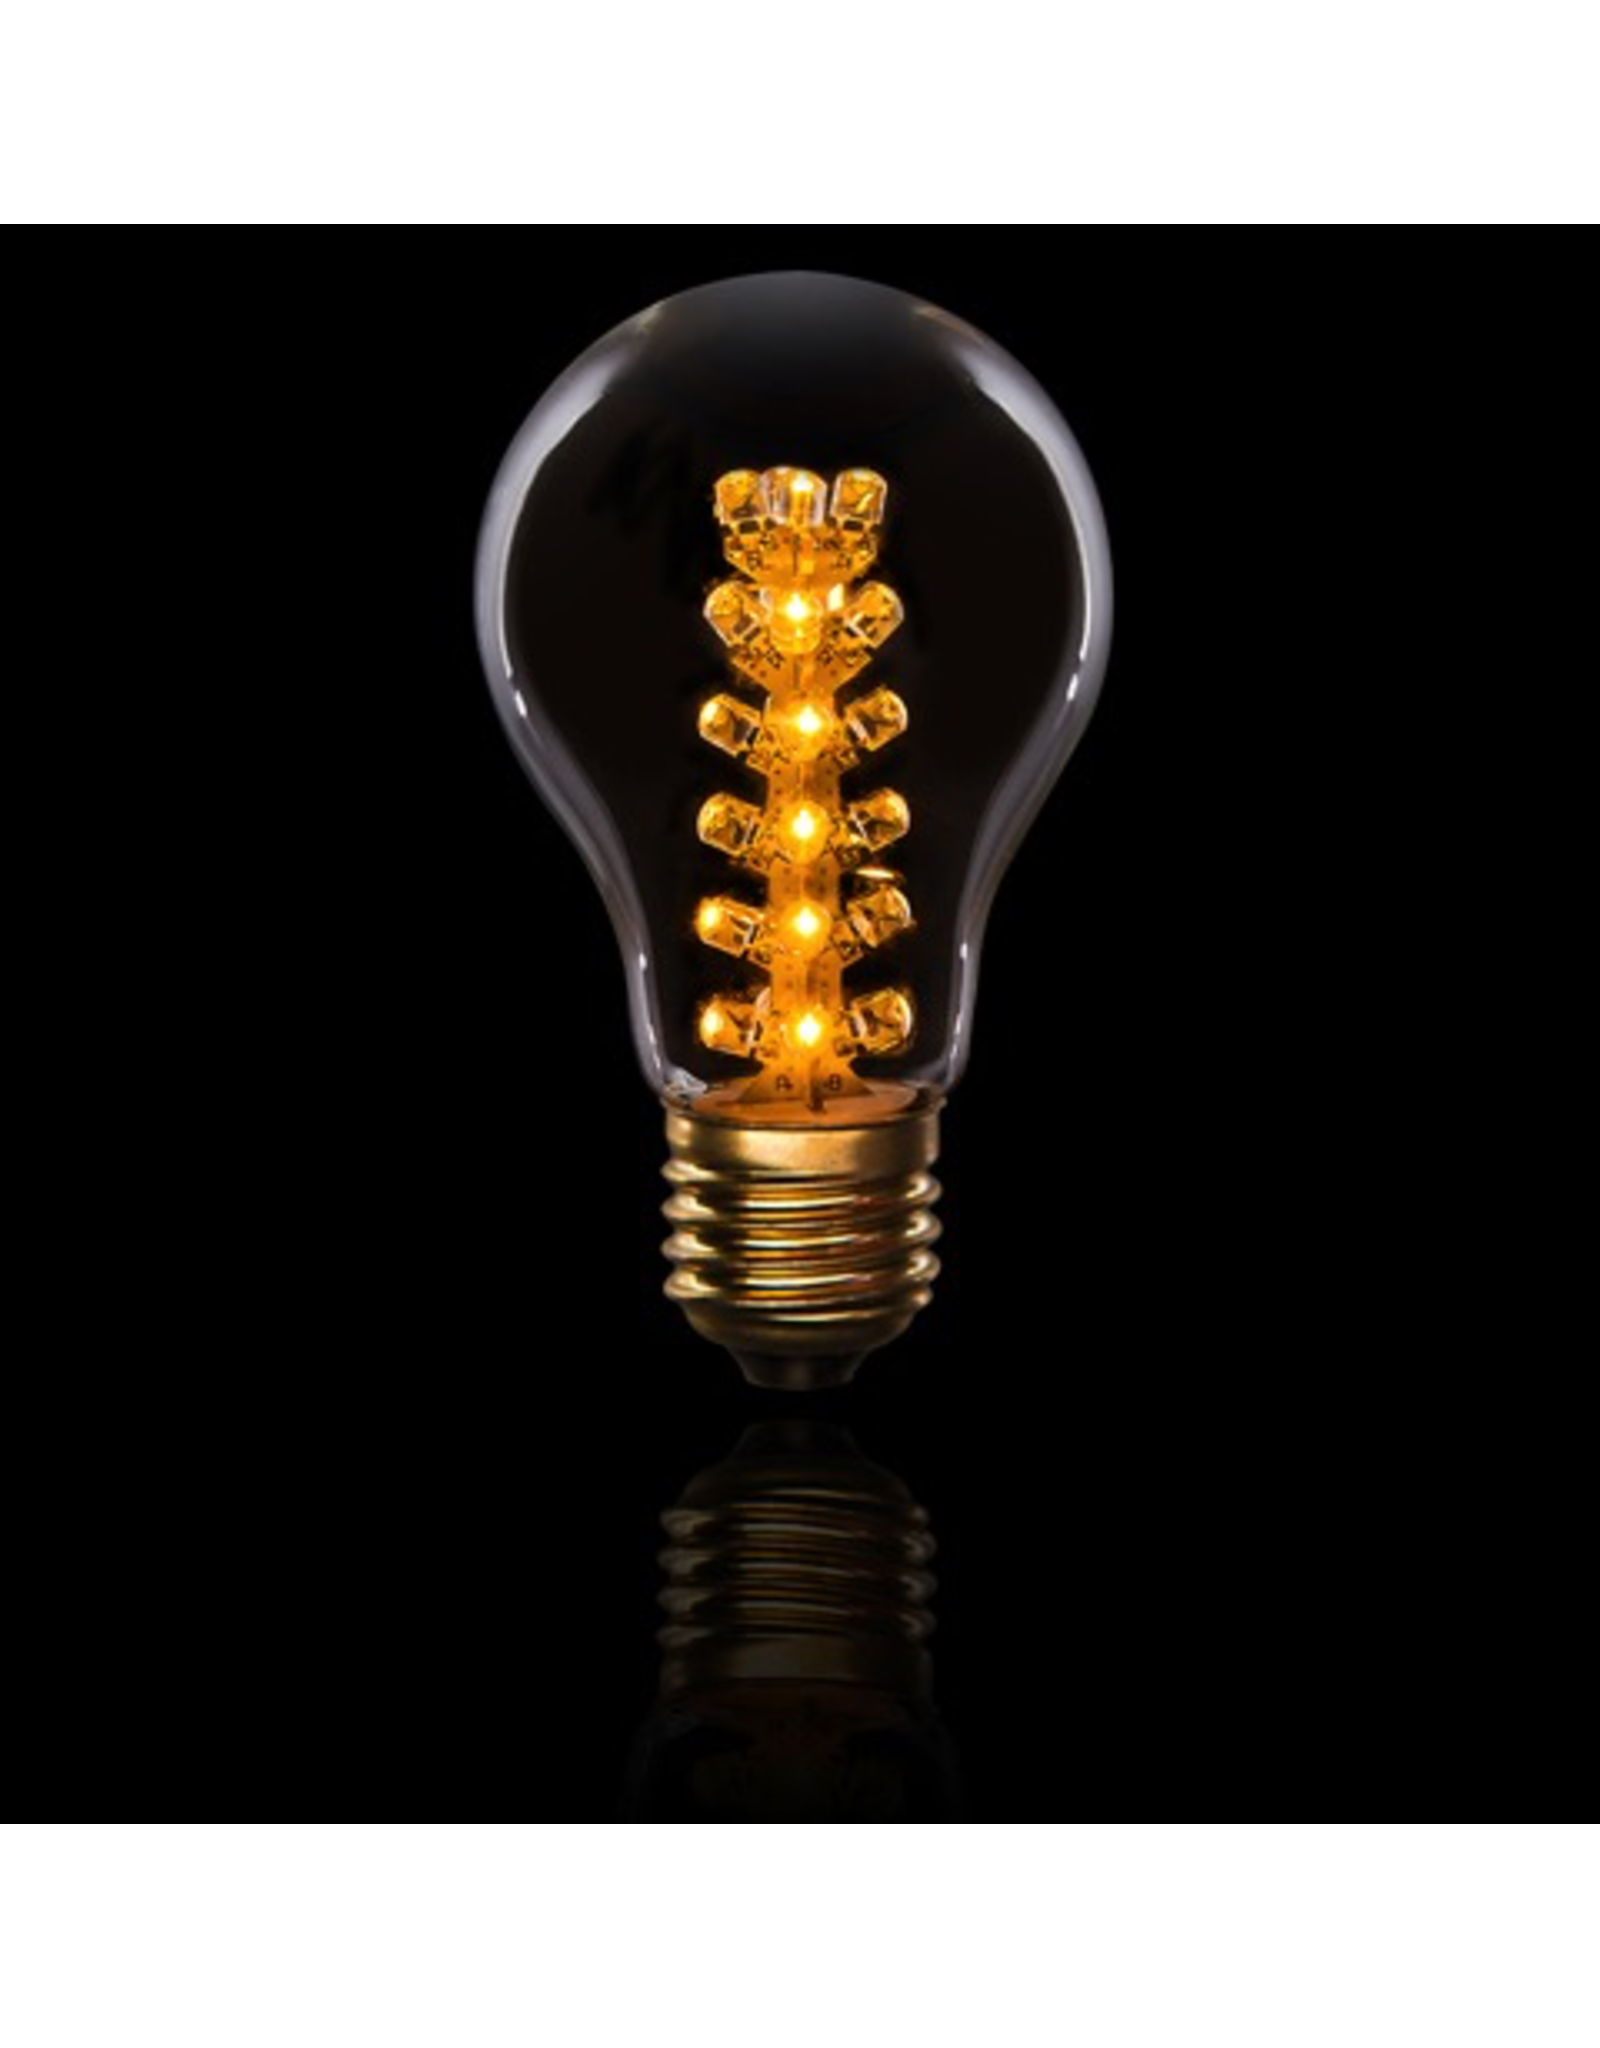 Cleveland Vintage Lighting Edison Style Light Bulb LED 1.7W E26 Base